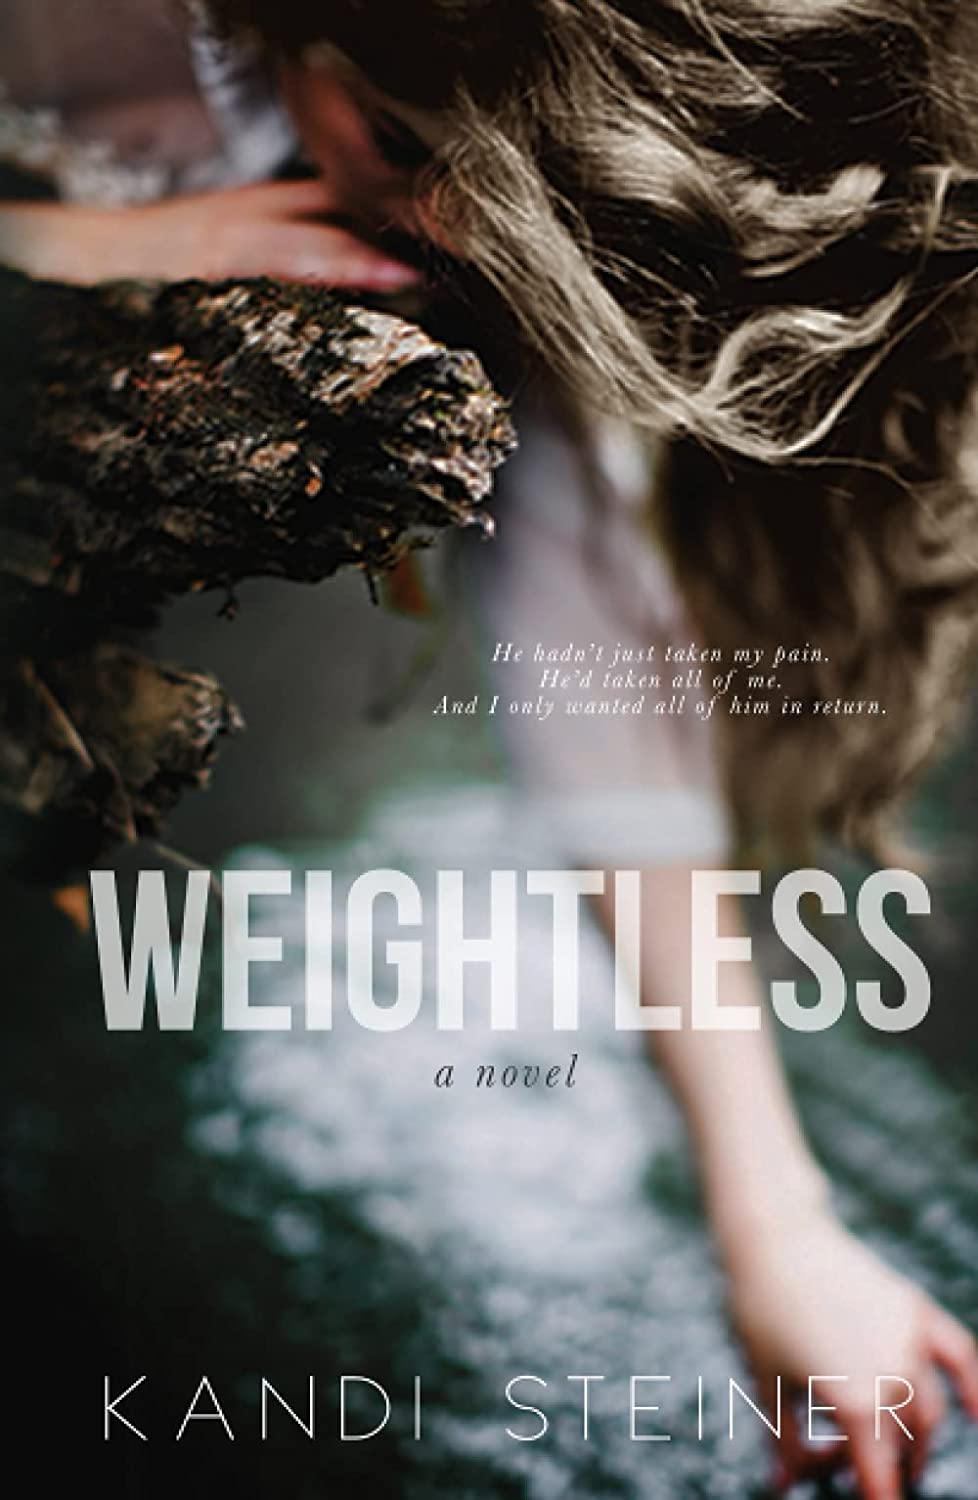 Weightless by Kandi Steiner